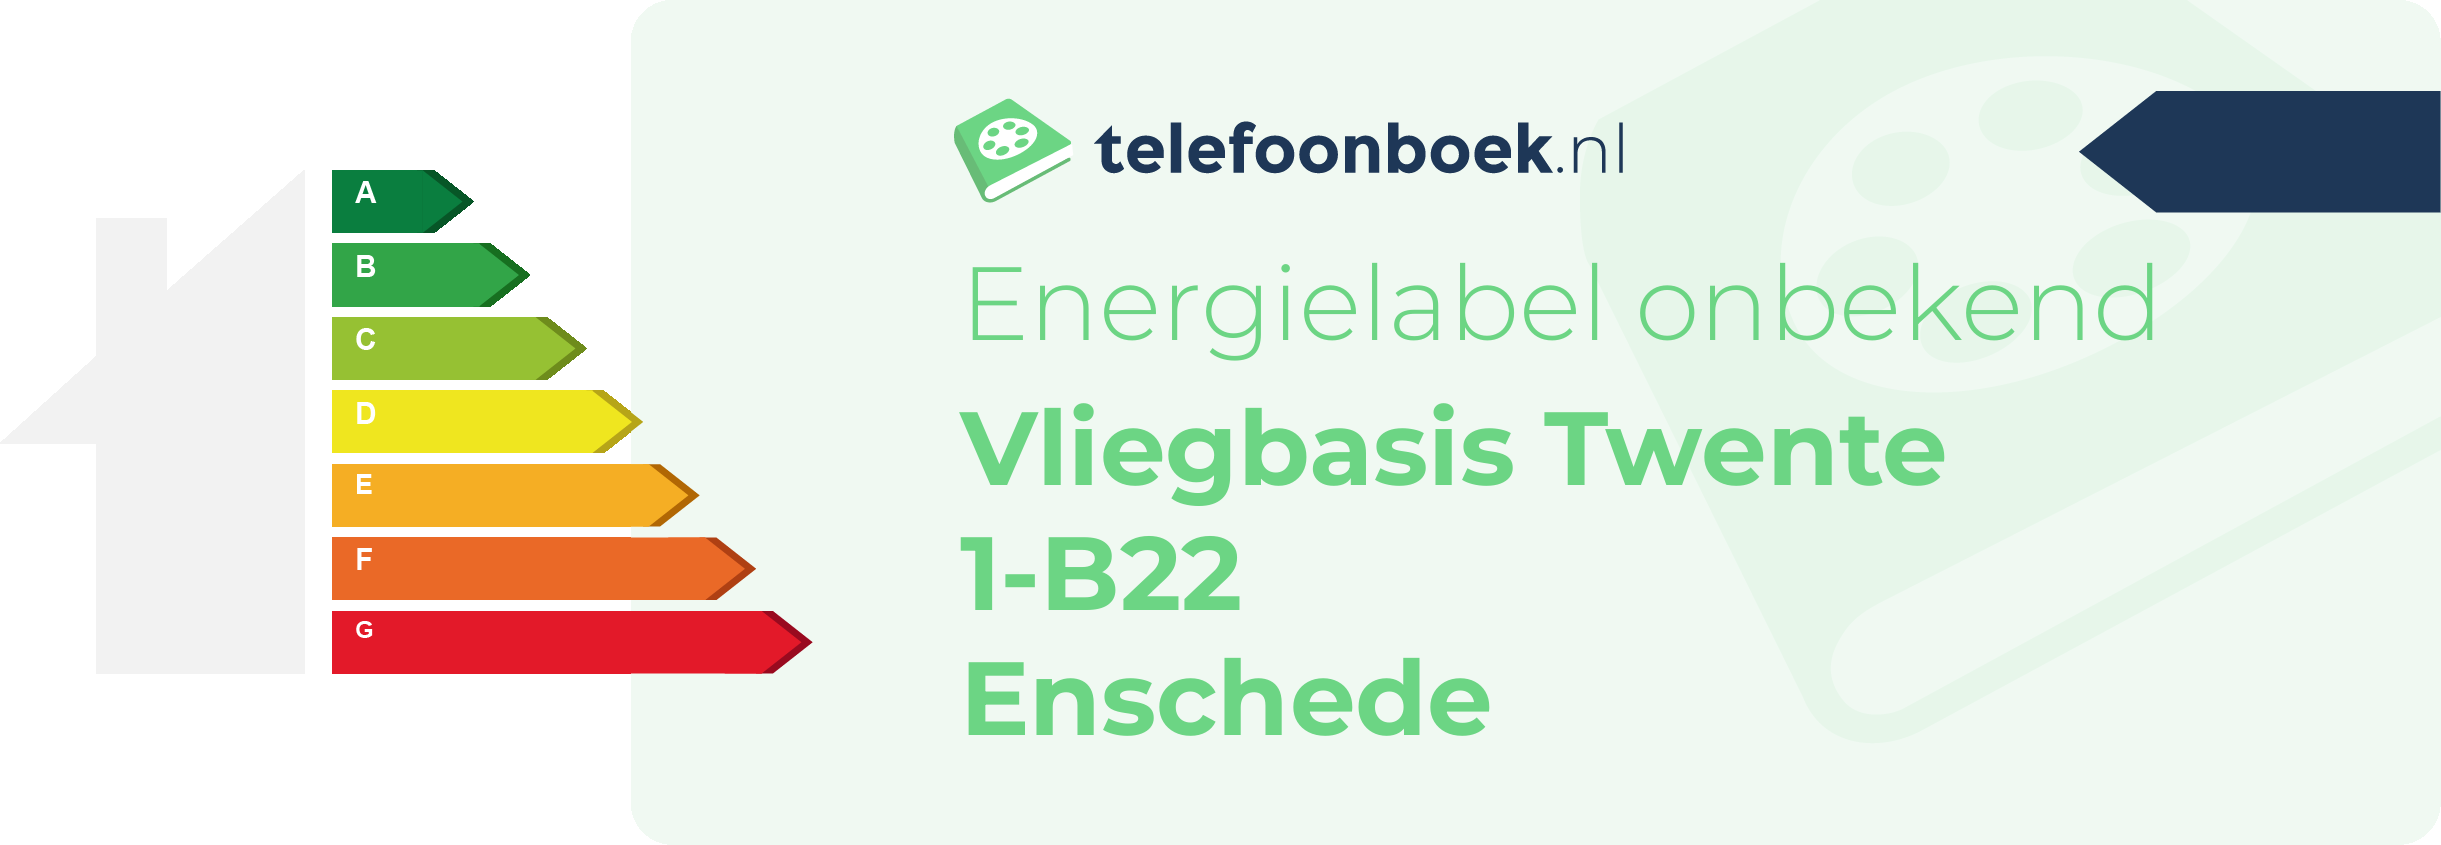 Energielabel Vliegbasis Twente 1-B22 Enschede